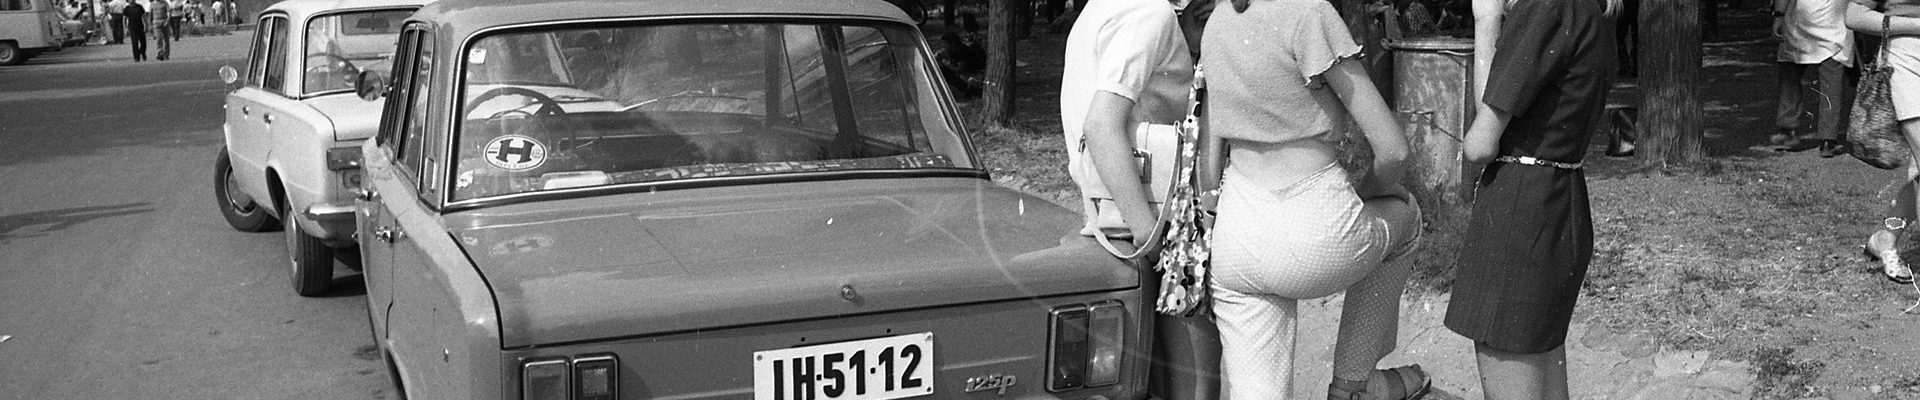 Fiaty 125p były popularne w wielu krajach (FORTEPAN/Urbán Tamás\CC BY-SA 3.0).